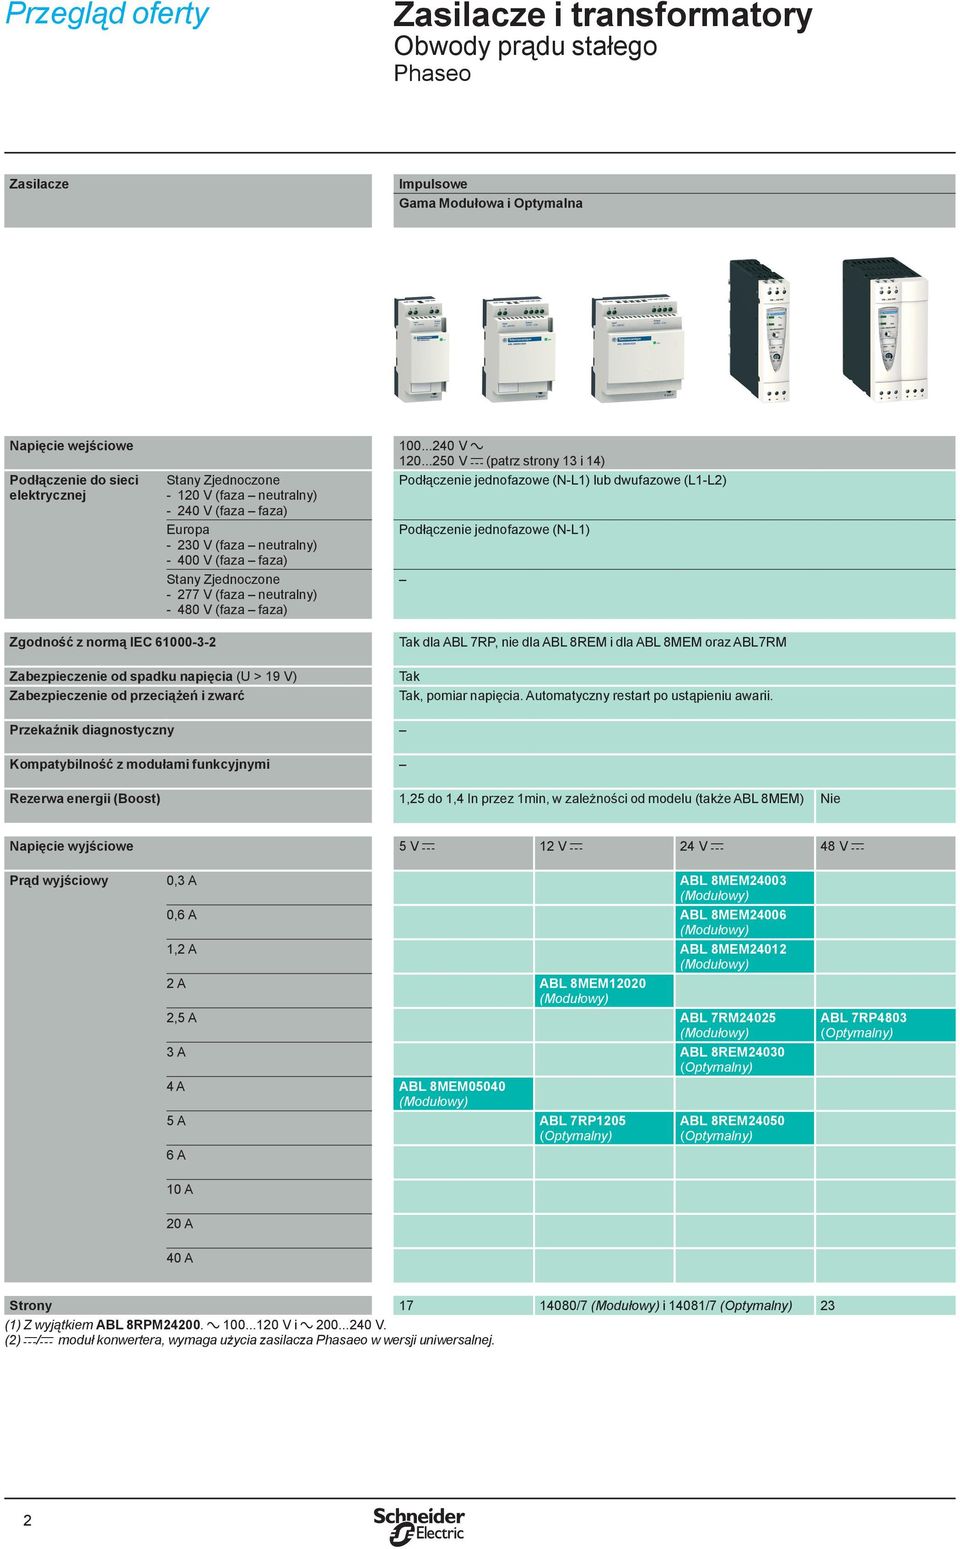 ..250 V c (patrz strony 13 i 14) Podłączenie jednofazowe (N-L1) lub dwufazowe (L1-L2) Podłączenie jednofazowe (N-L1) Zgodność z normą IEC 61000-3-2 Zabezpieczenie od spadku napięcia (U > 19 V)